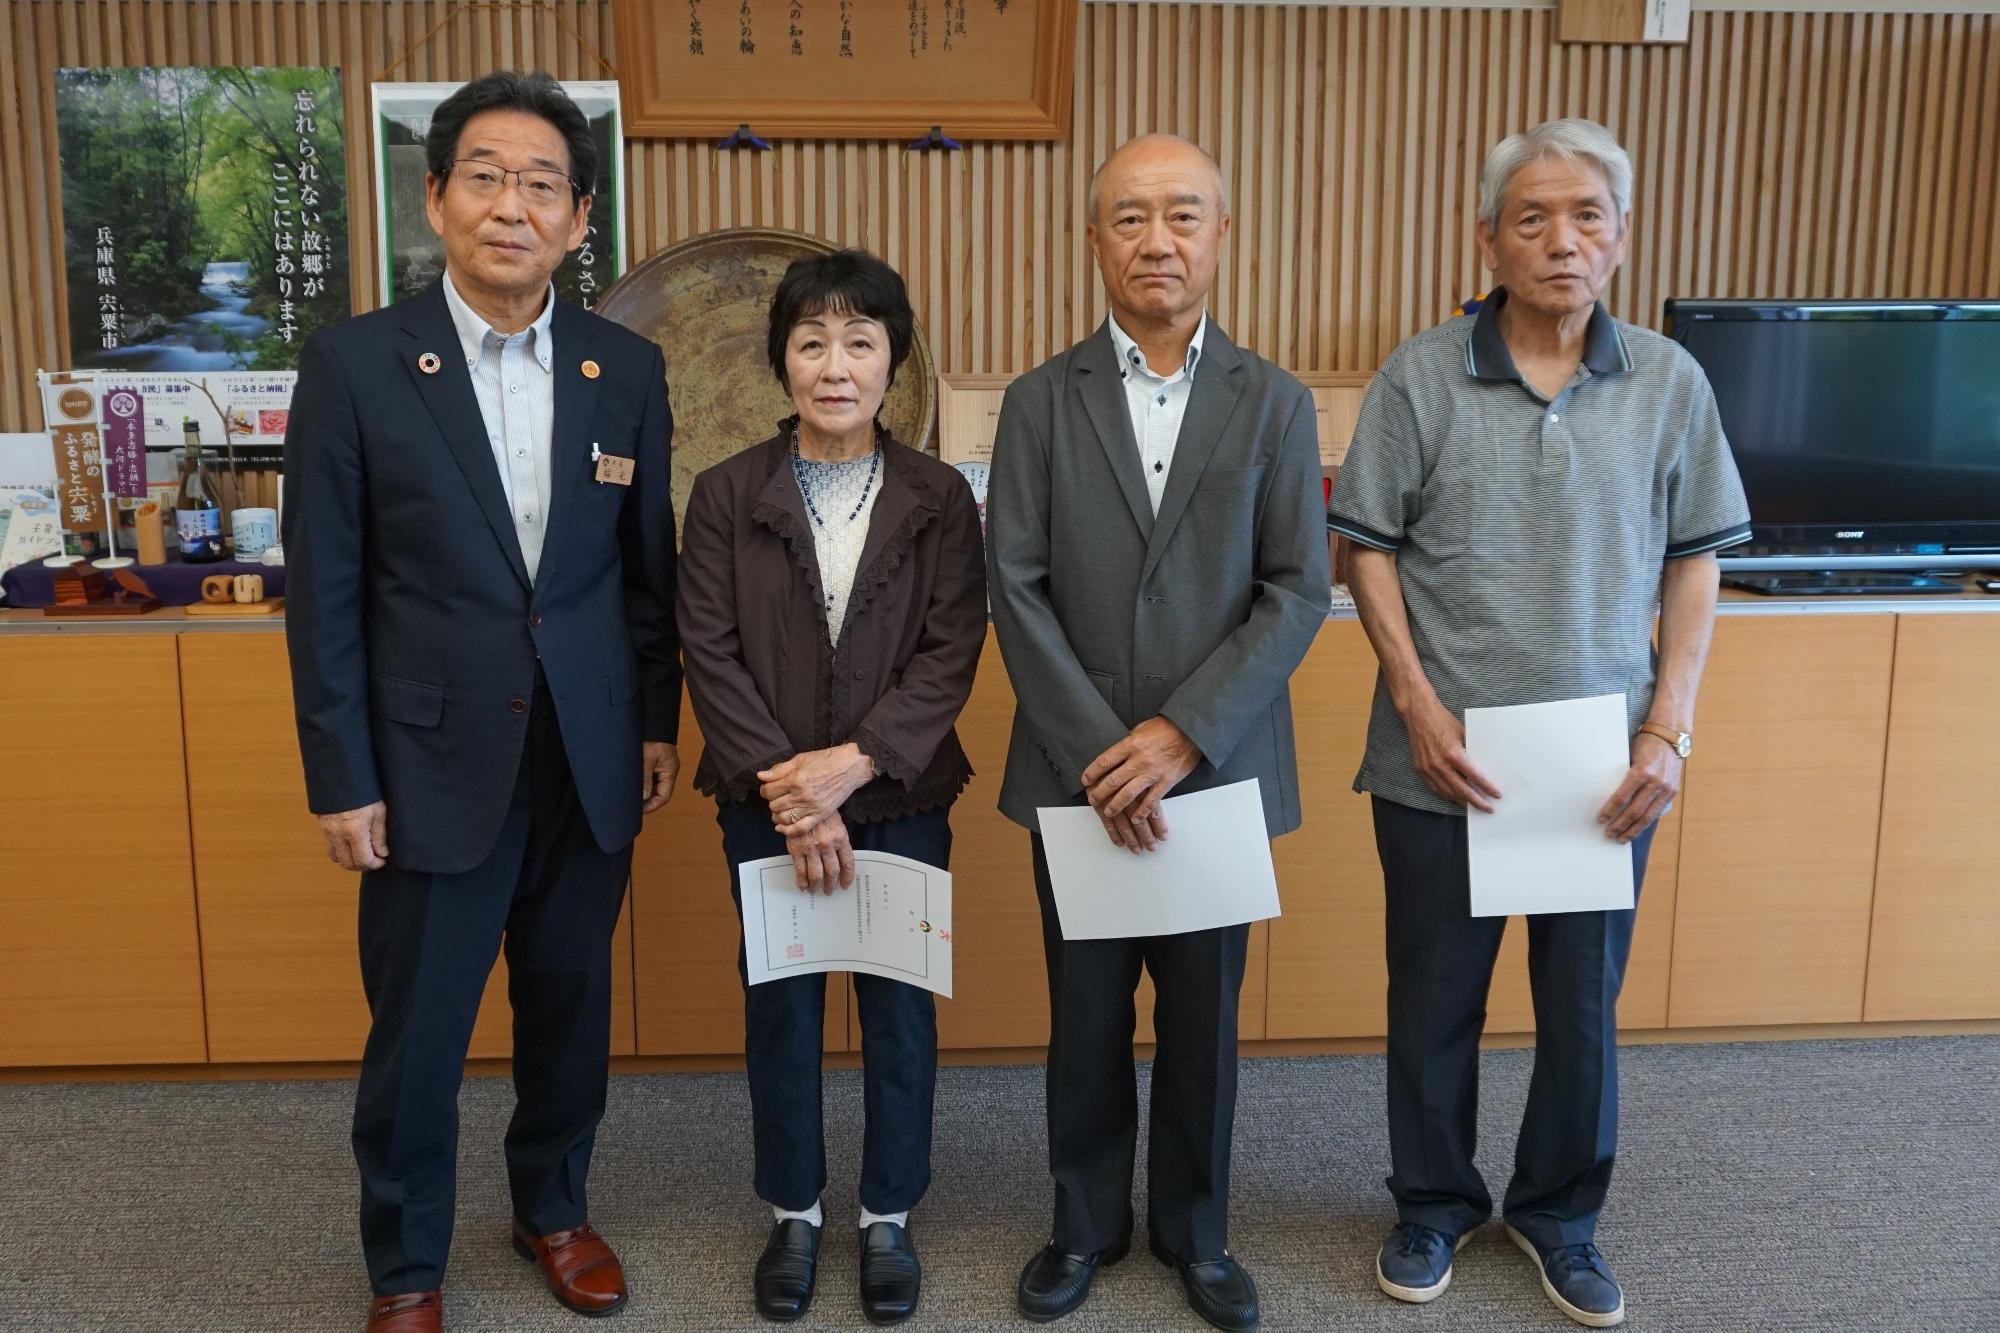 市長室で鳥居さん、田中さん、西川さんの3人が市長と横一列になって並んでいる写真